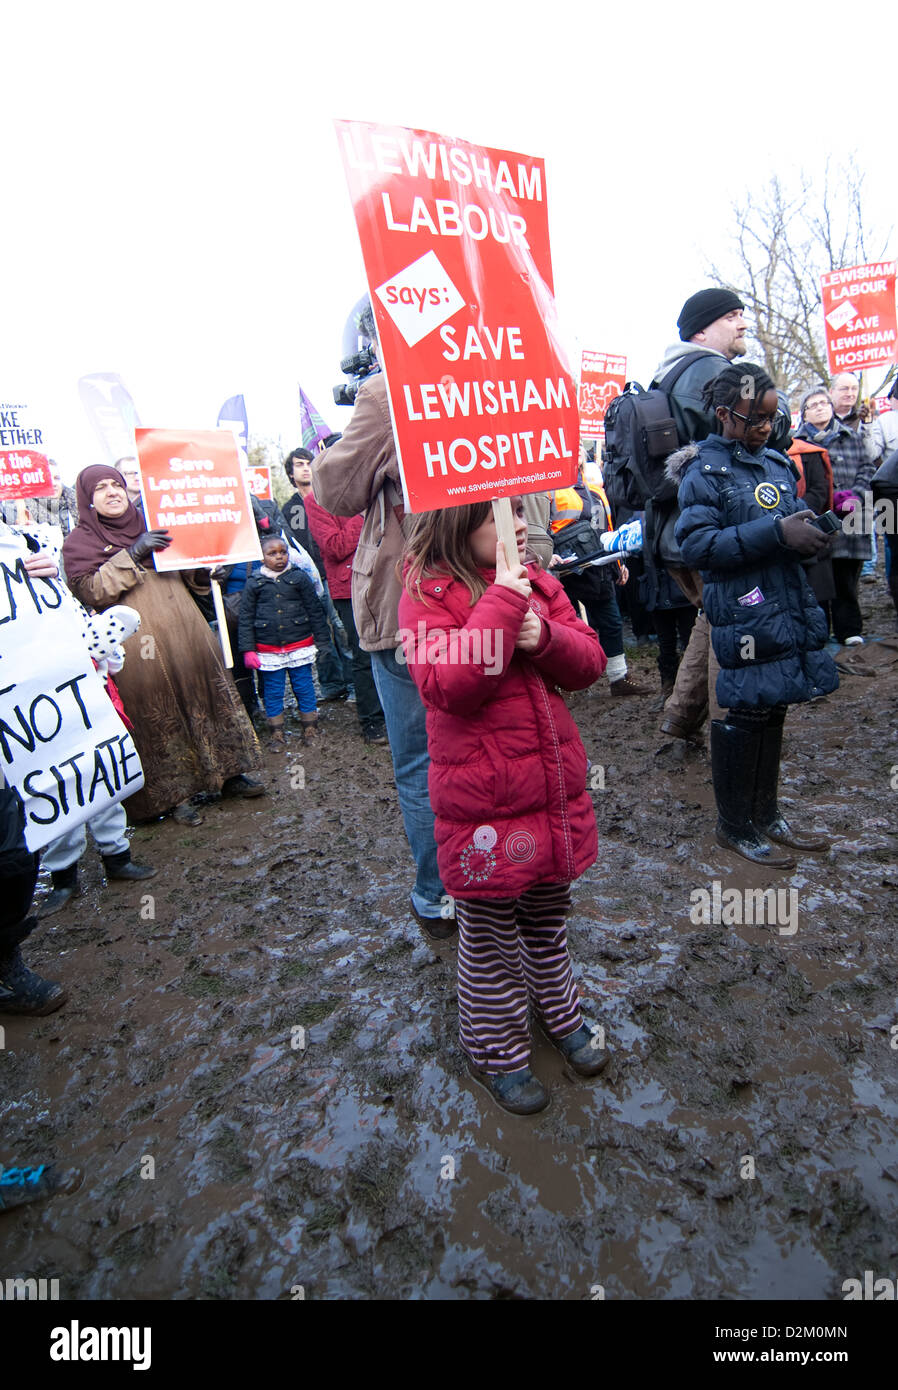 Niña está sosteniendo un cartel en el barro en el parque durante el mountfield guardar hospital lewisham demo Foto de stock